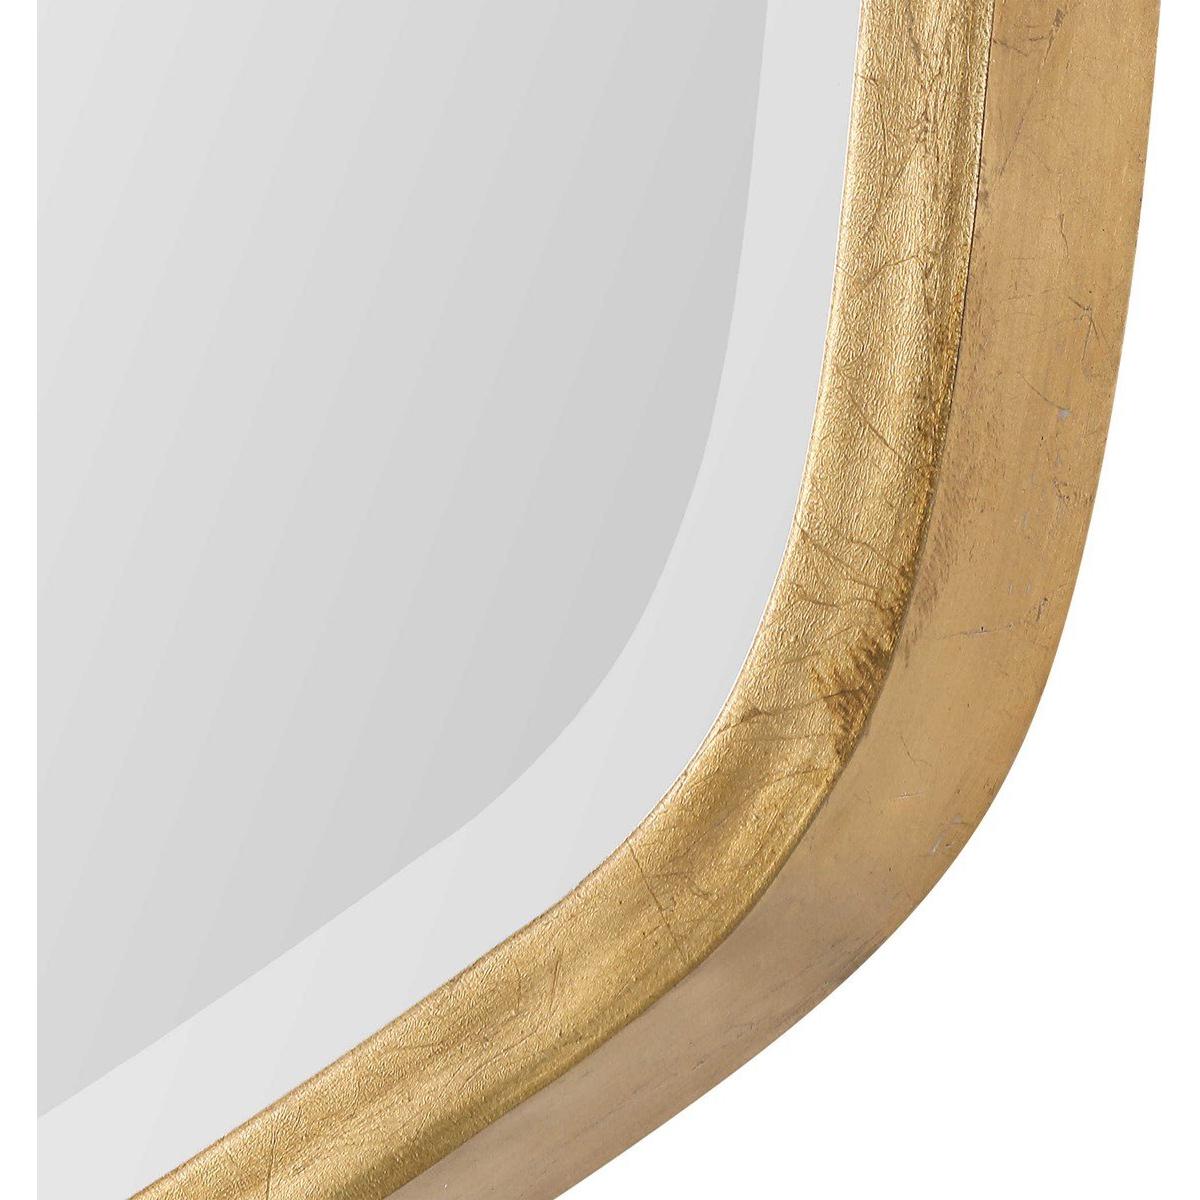 Espejo Ovalado - Monnry